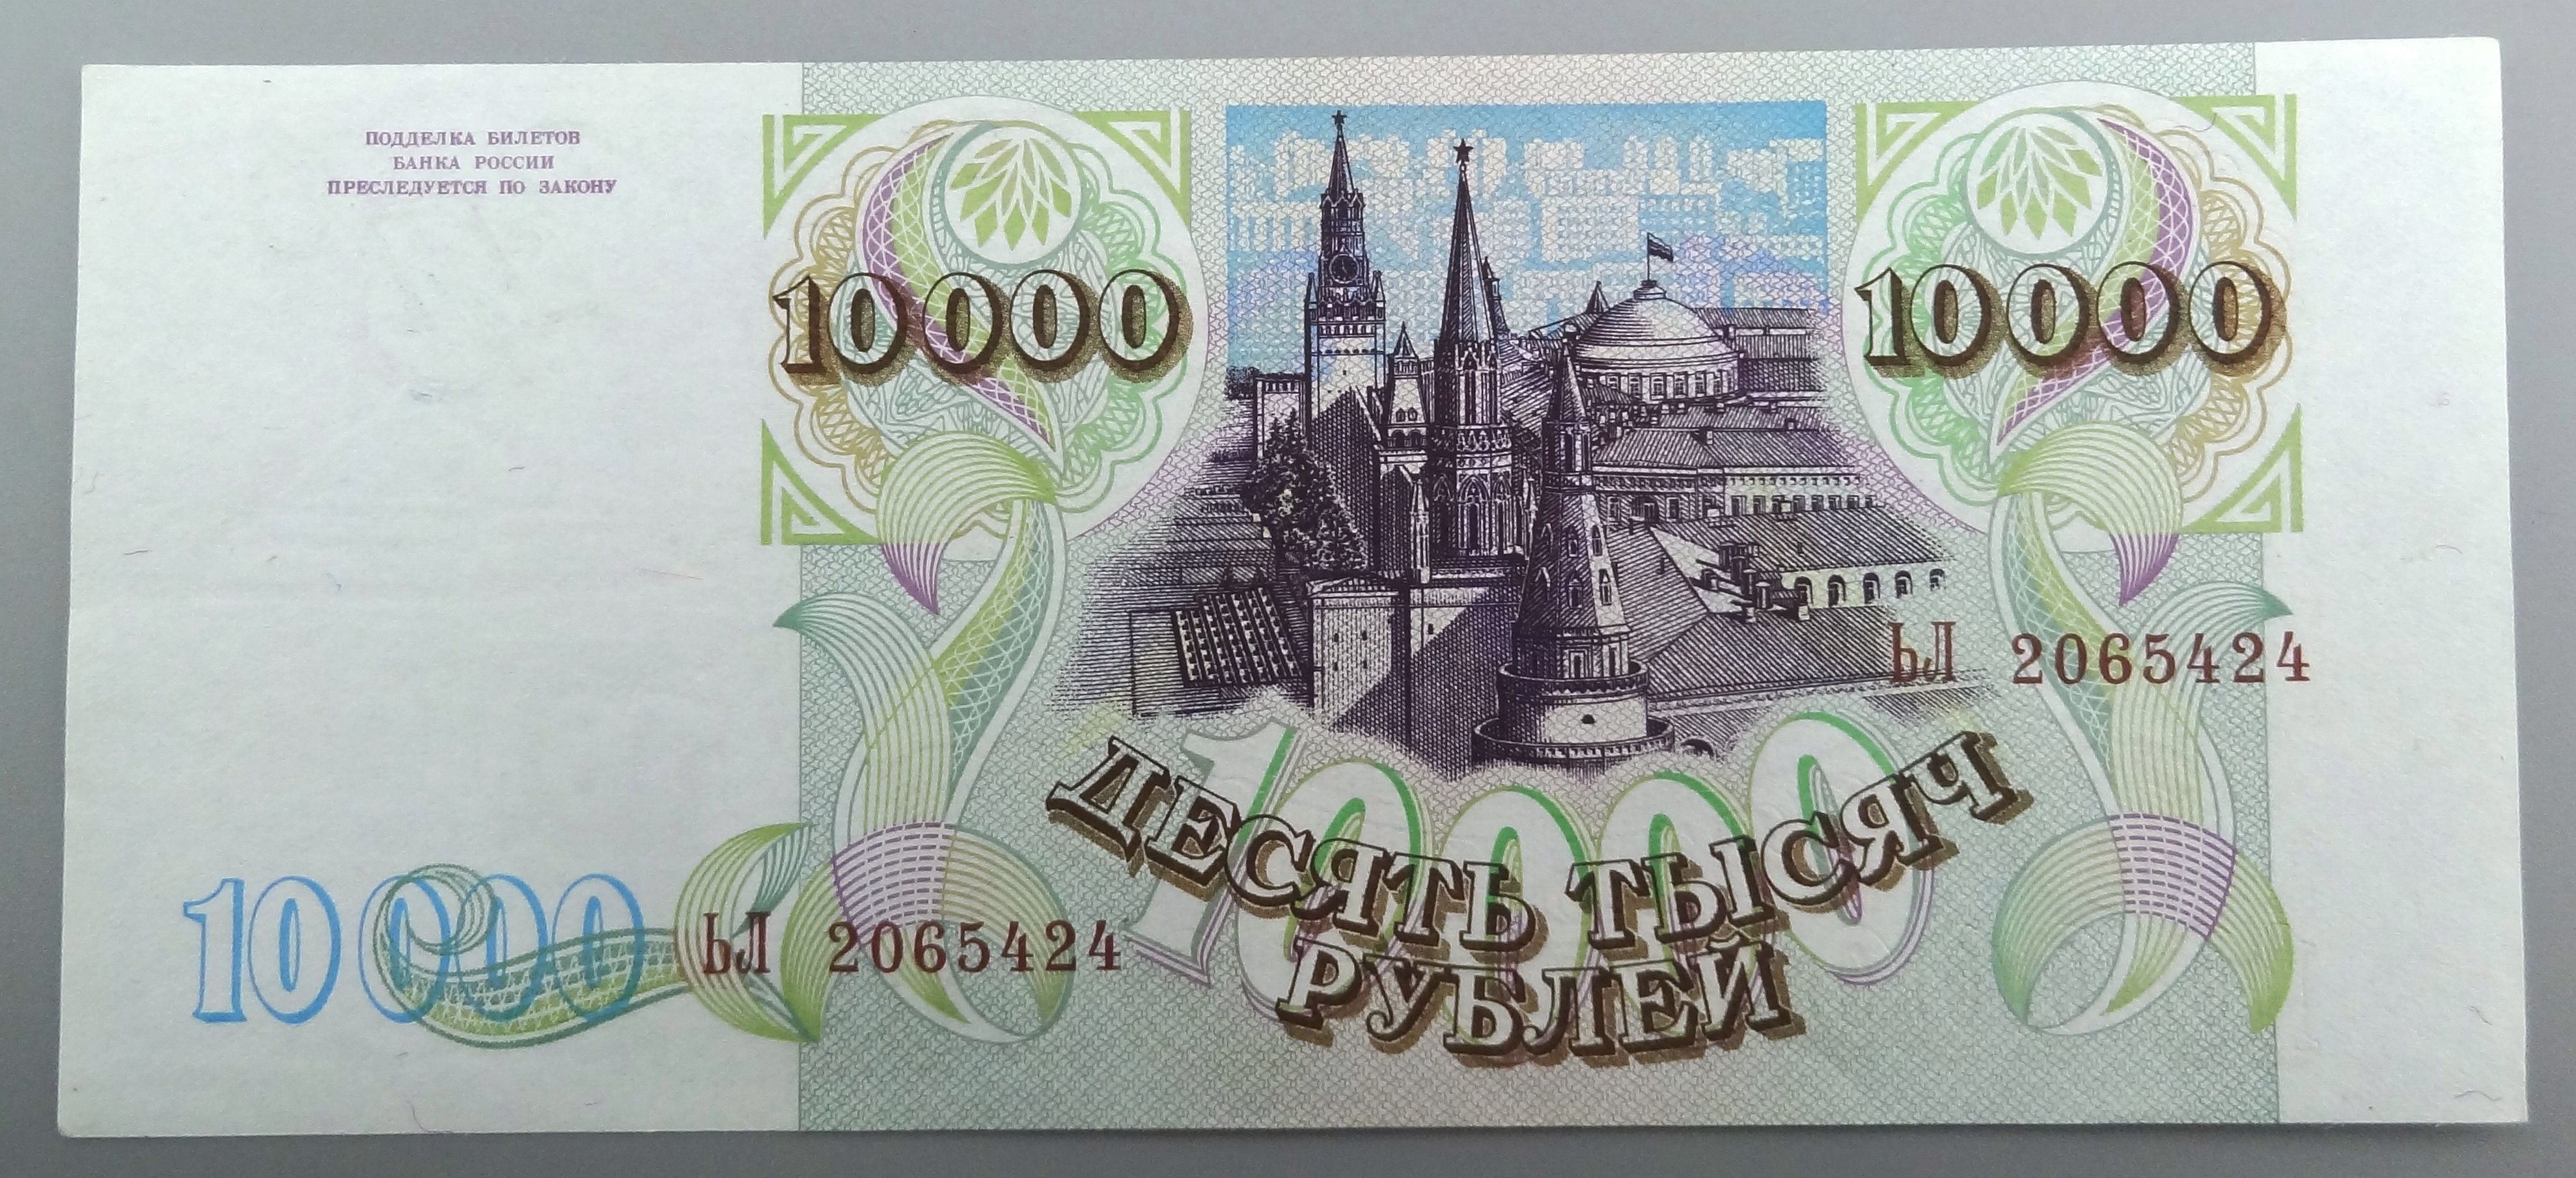 5 от 10 000 рублей. Купюра 10000 рублей 1993. Купюра 10000 рублей 1992 года. Российская купюра 10000. Банкнота 10000 рублей 1993 года.